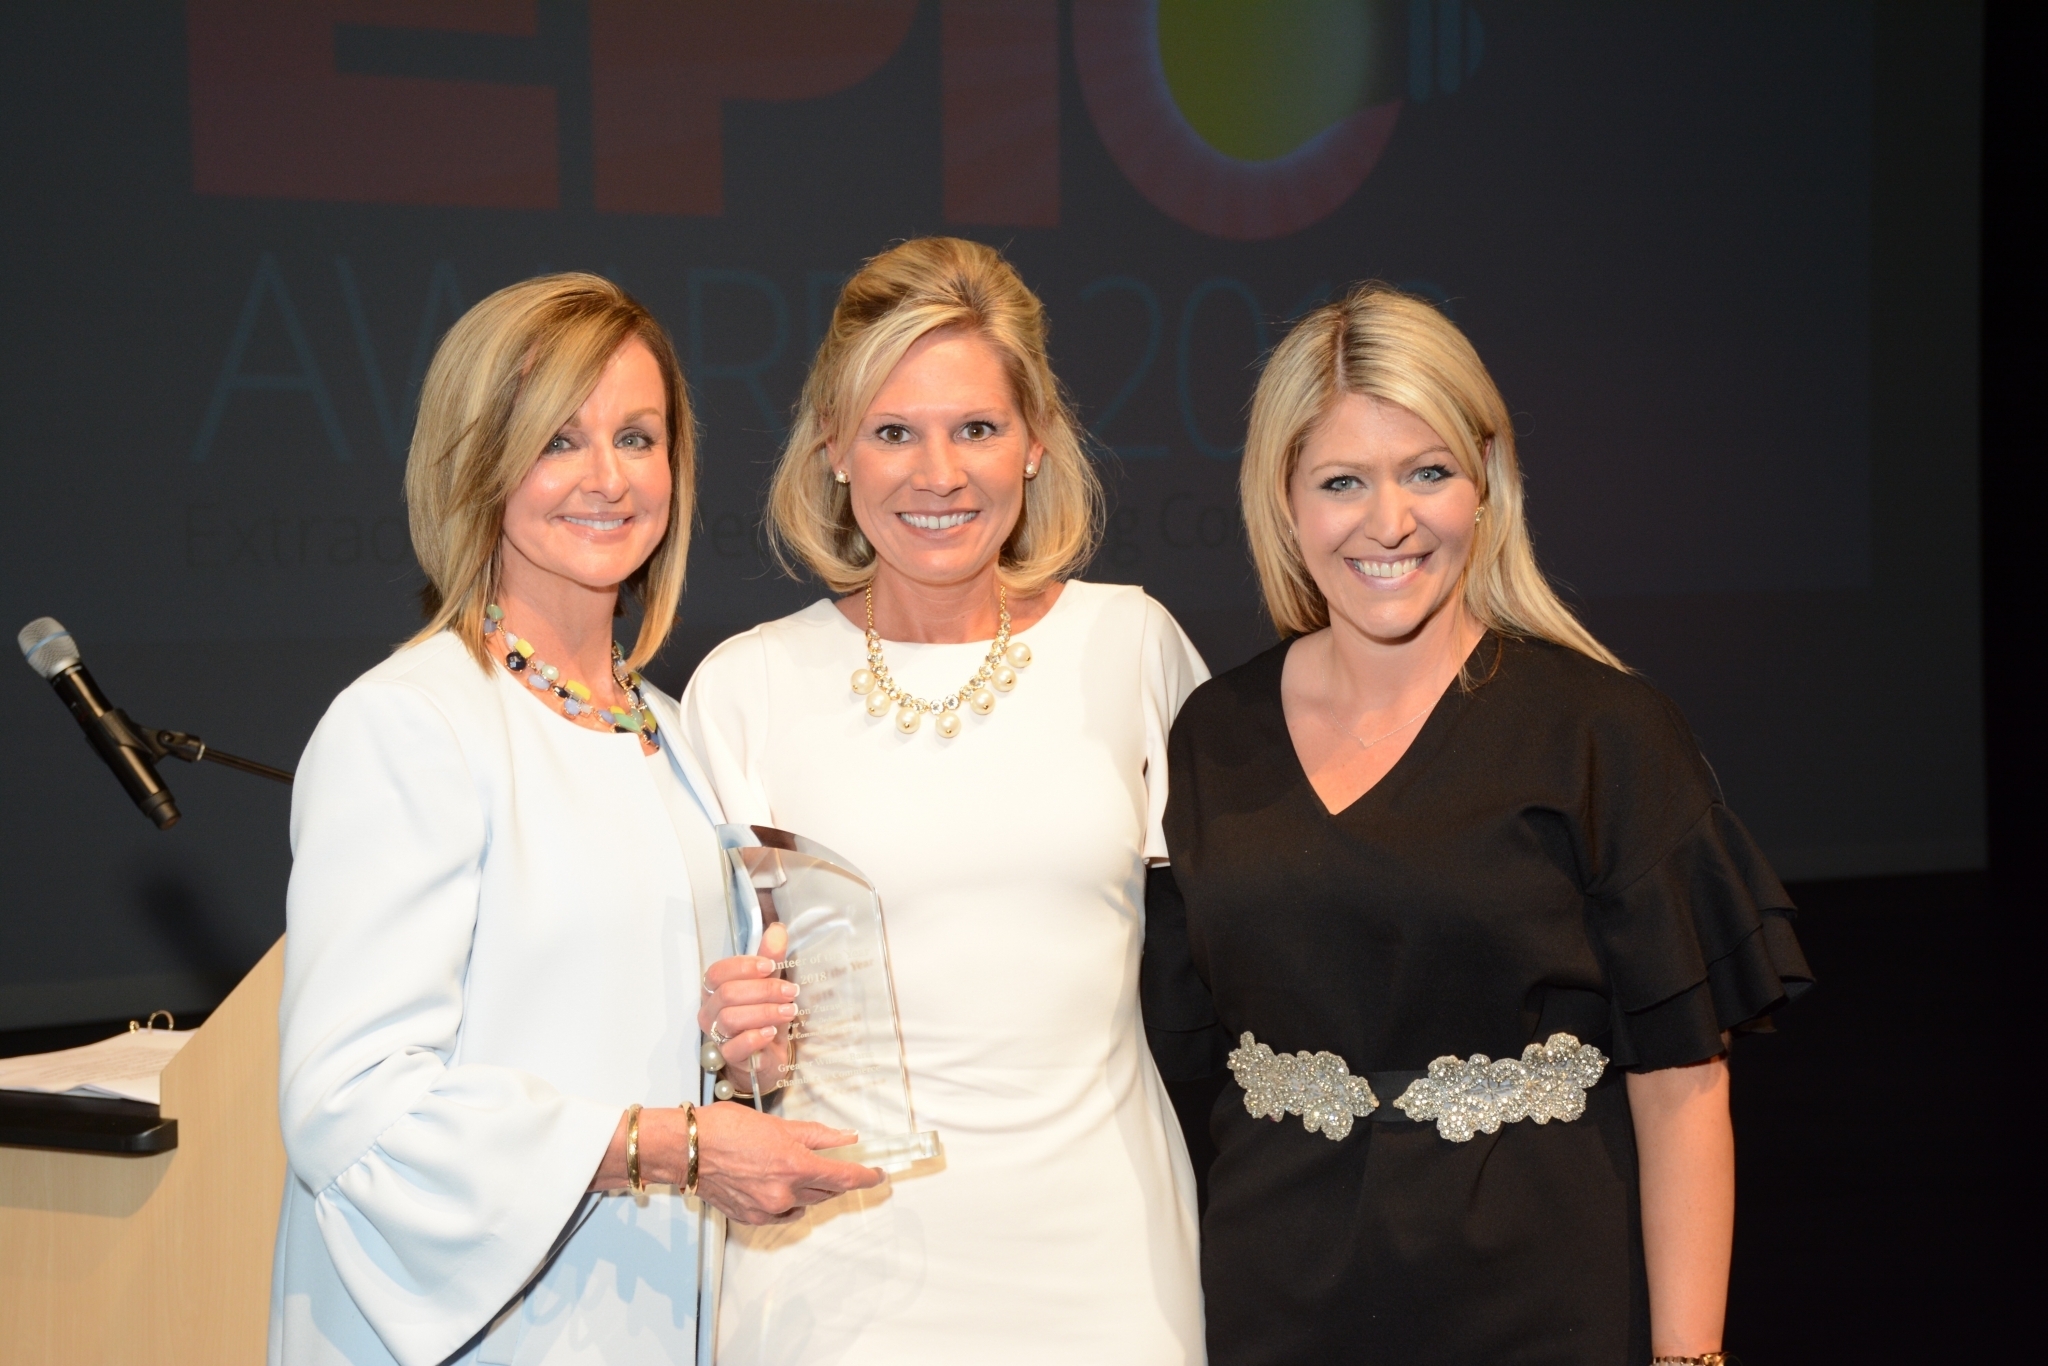 Three Women Smile While Holding an Award